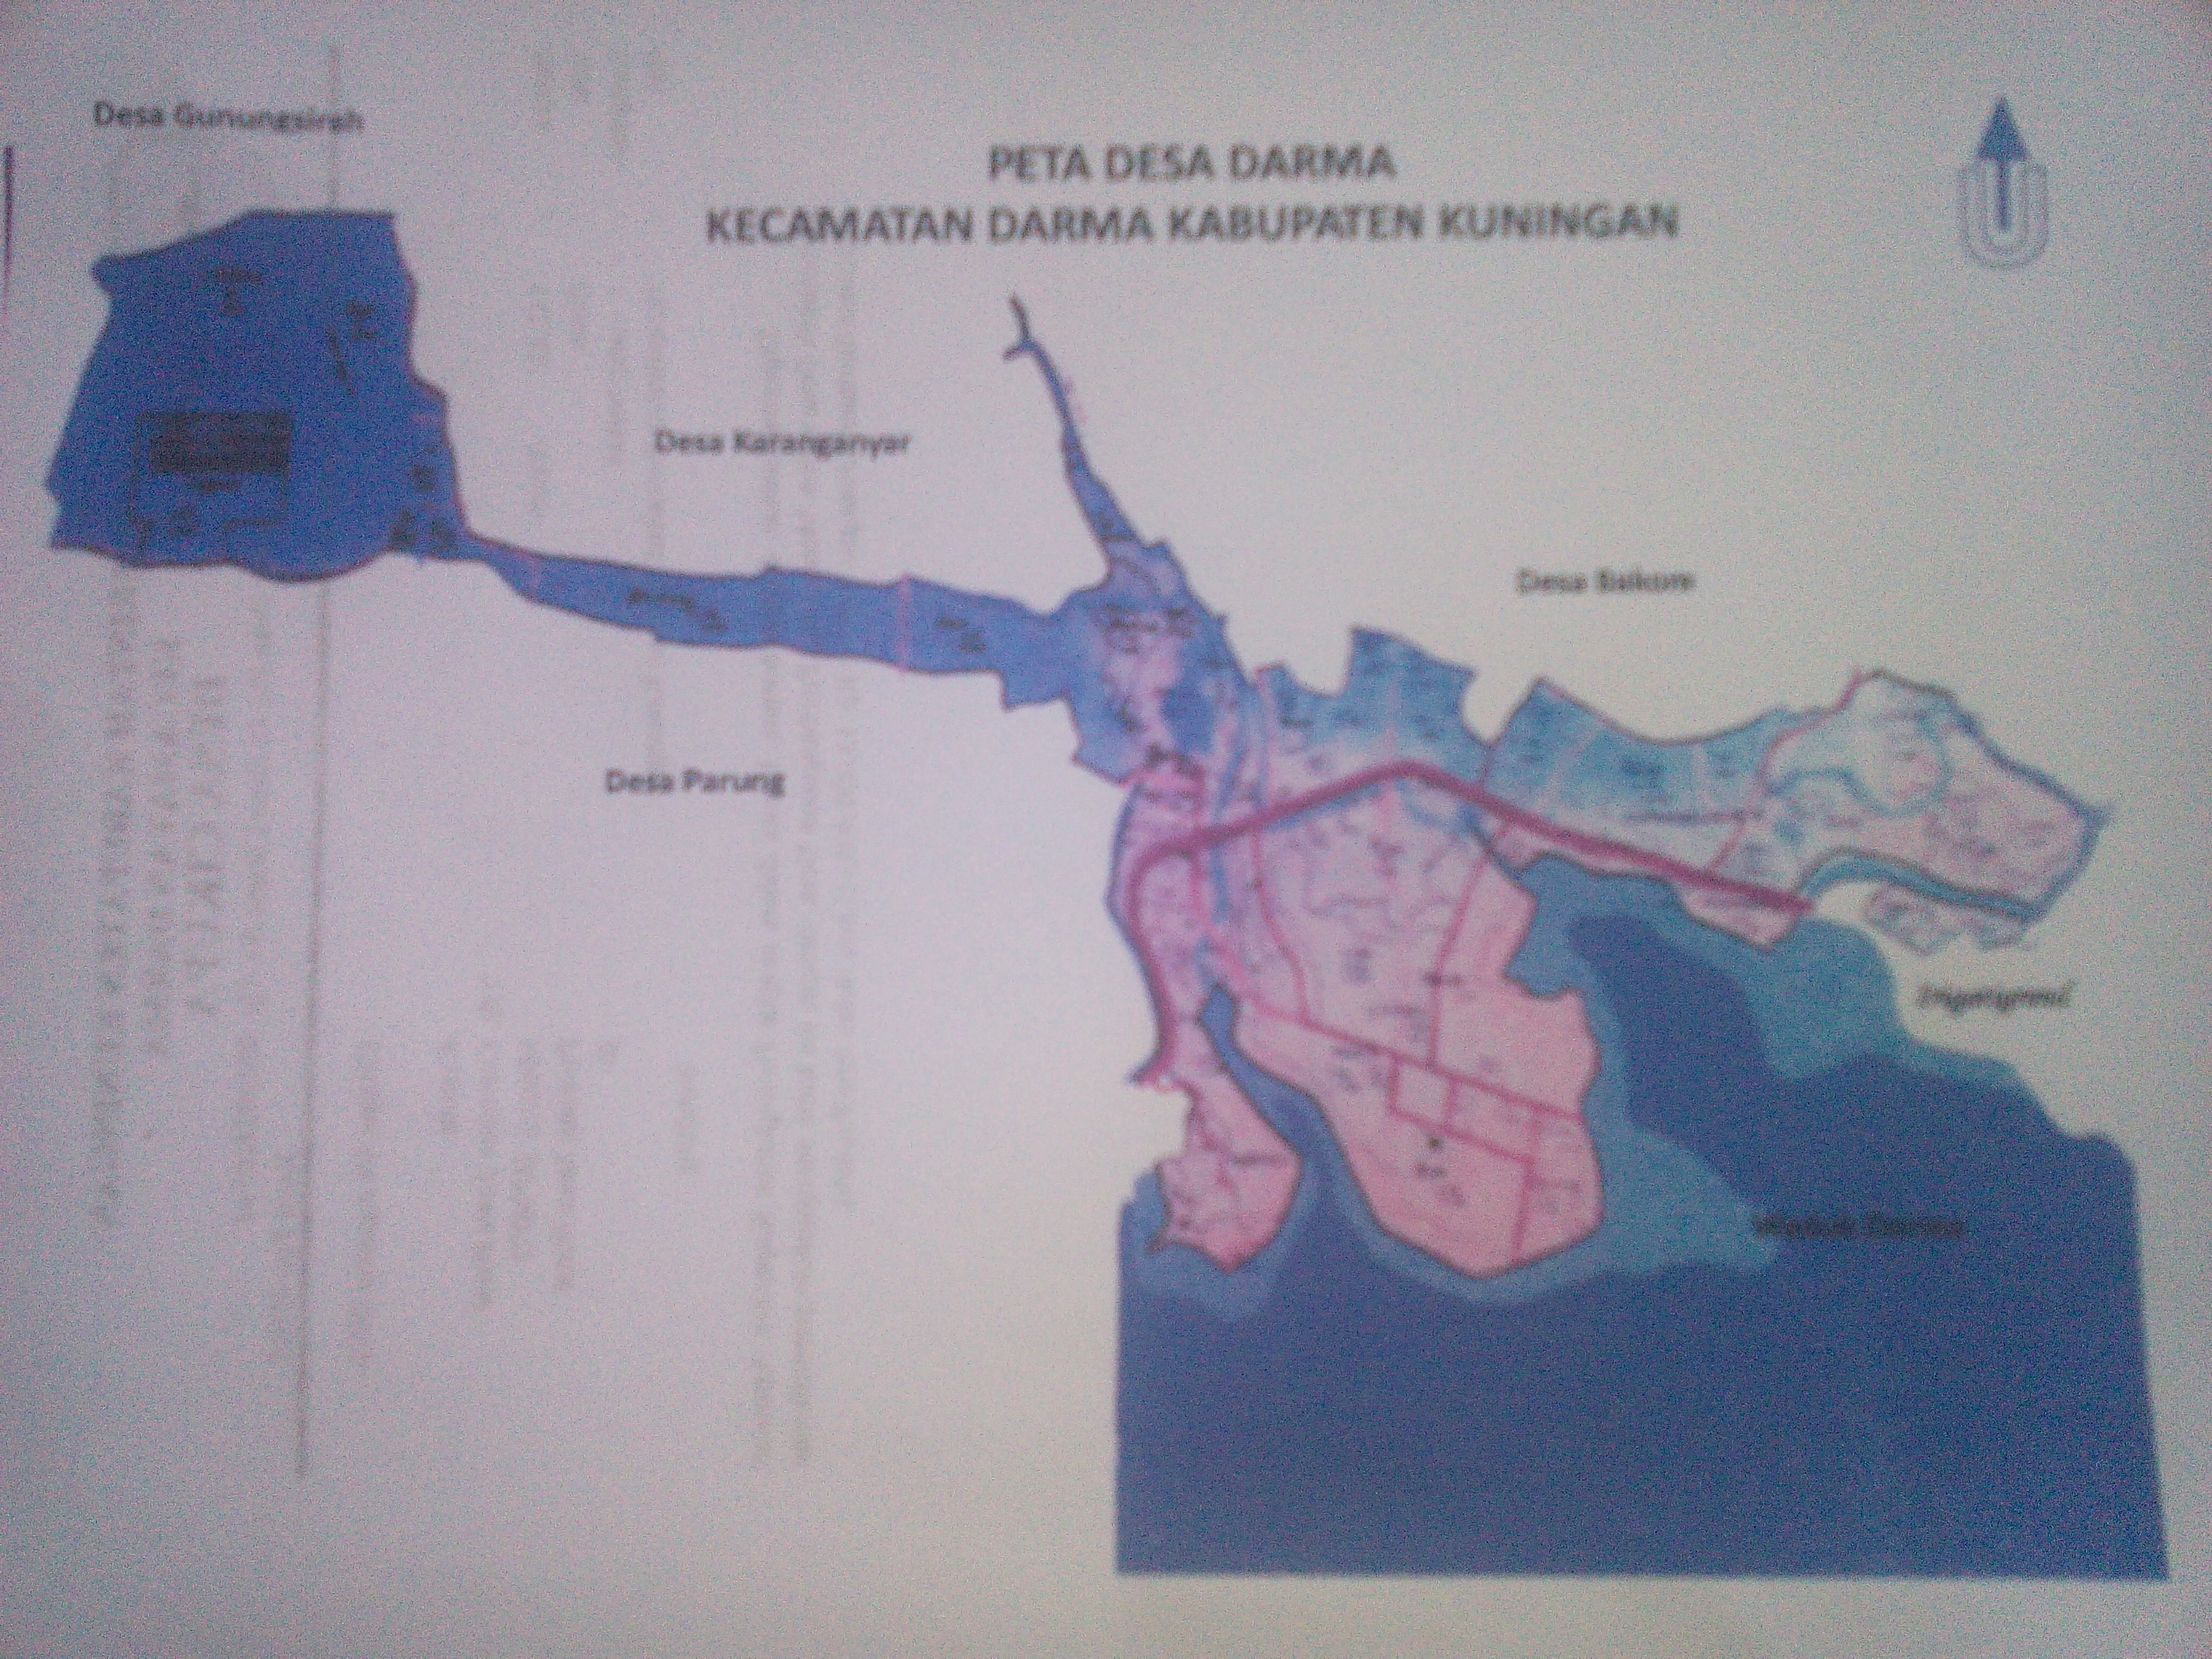 Peta Desa Desa Darma Kecamatan Darma Kabupaten Kuningan